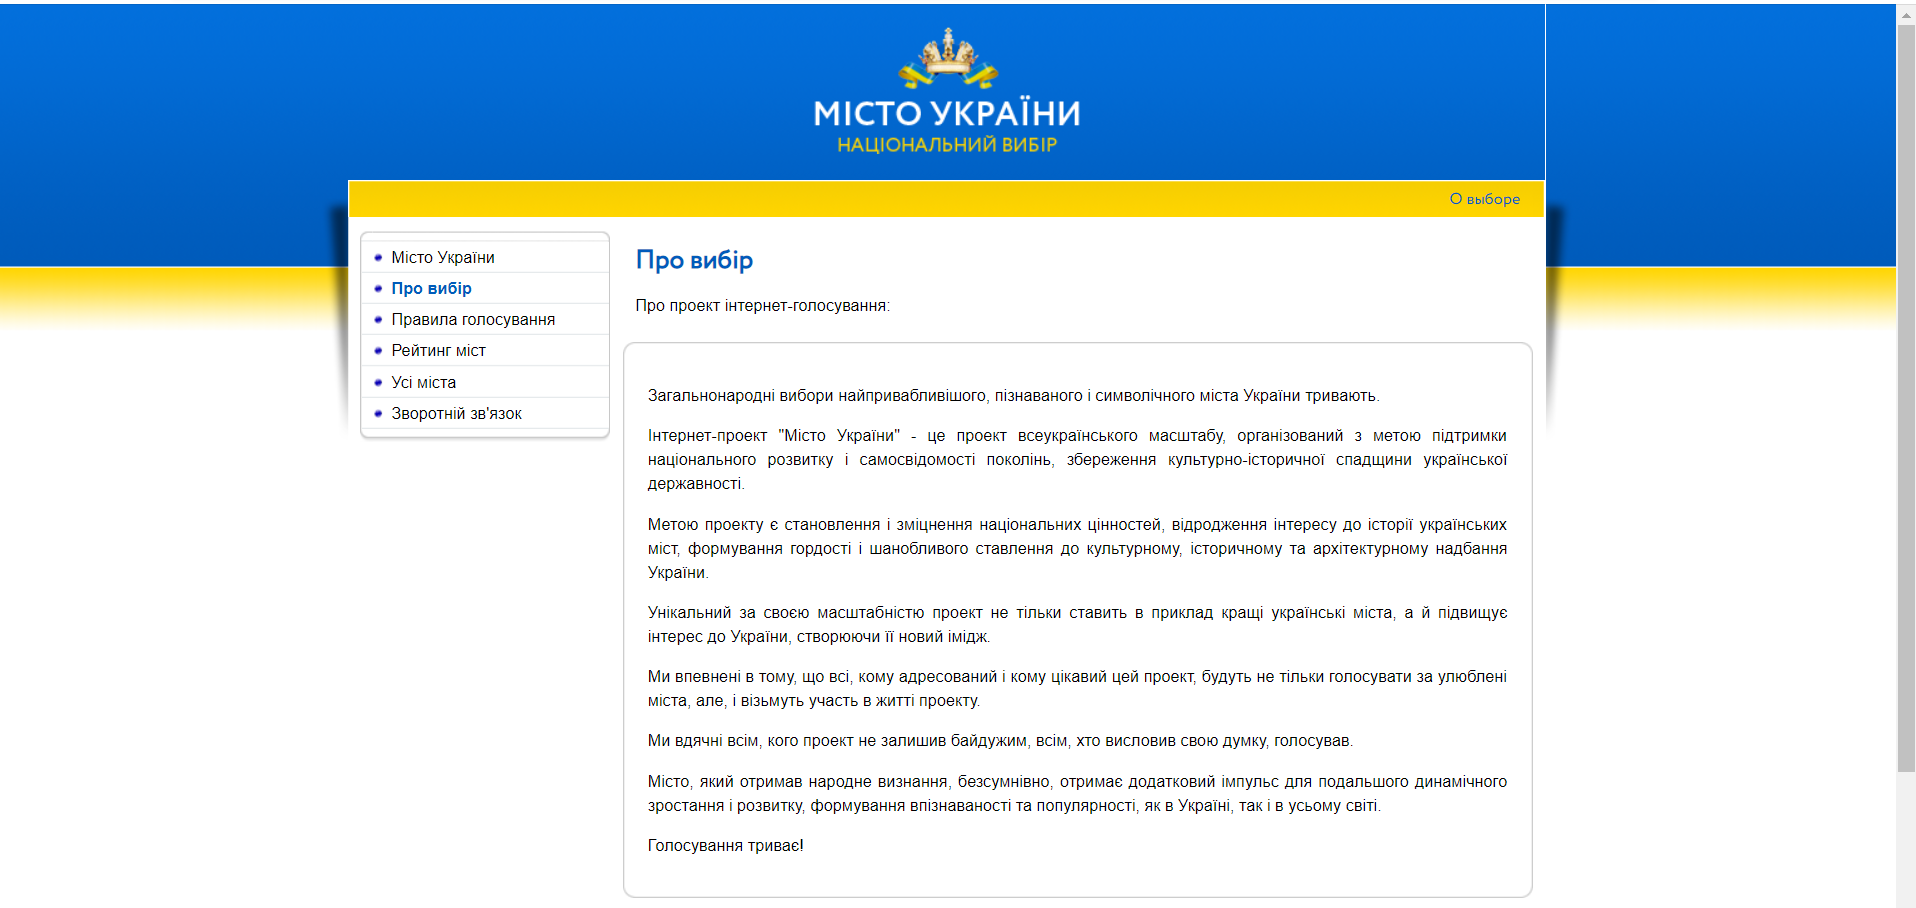 Запорожье попало в провокационный рейтинг украинских городов (ФОТО)